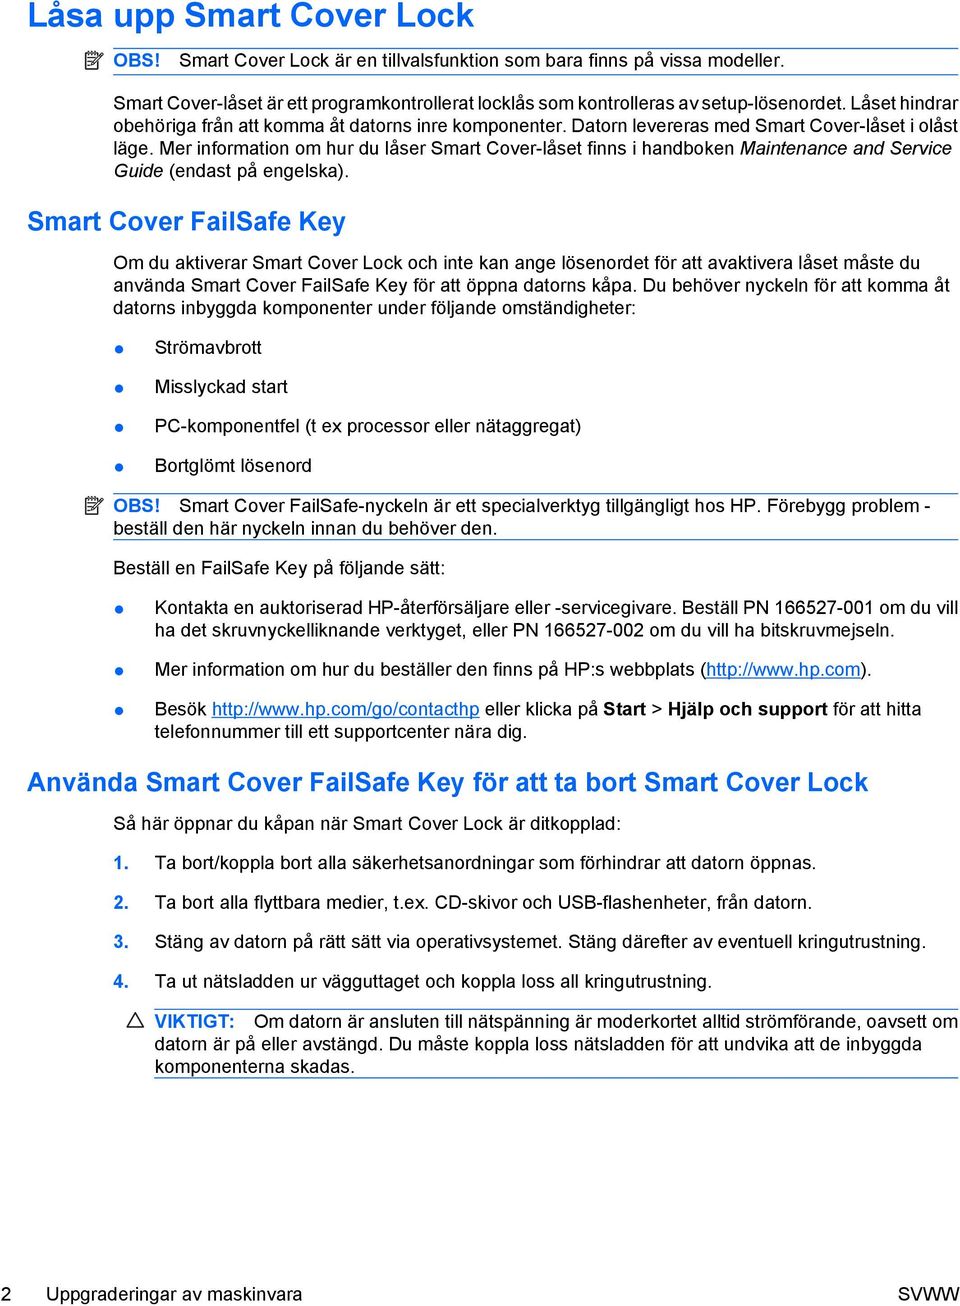 Mer information om hur du låser Smart Cover-låset finns i handboken Maintenance and Service Guide (endast på engelska).